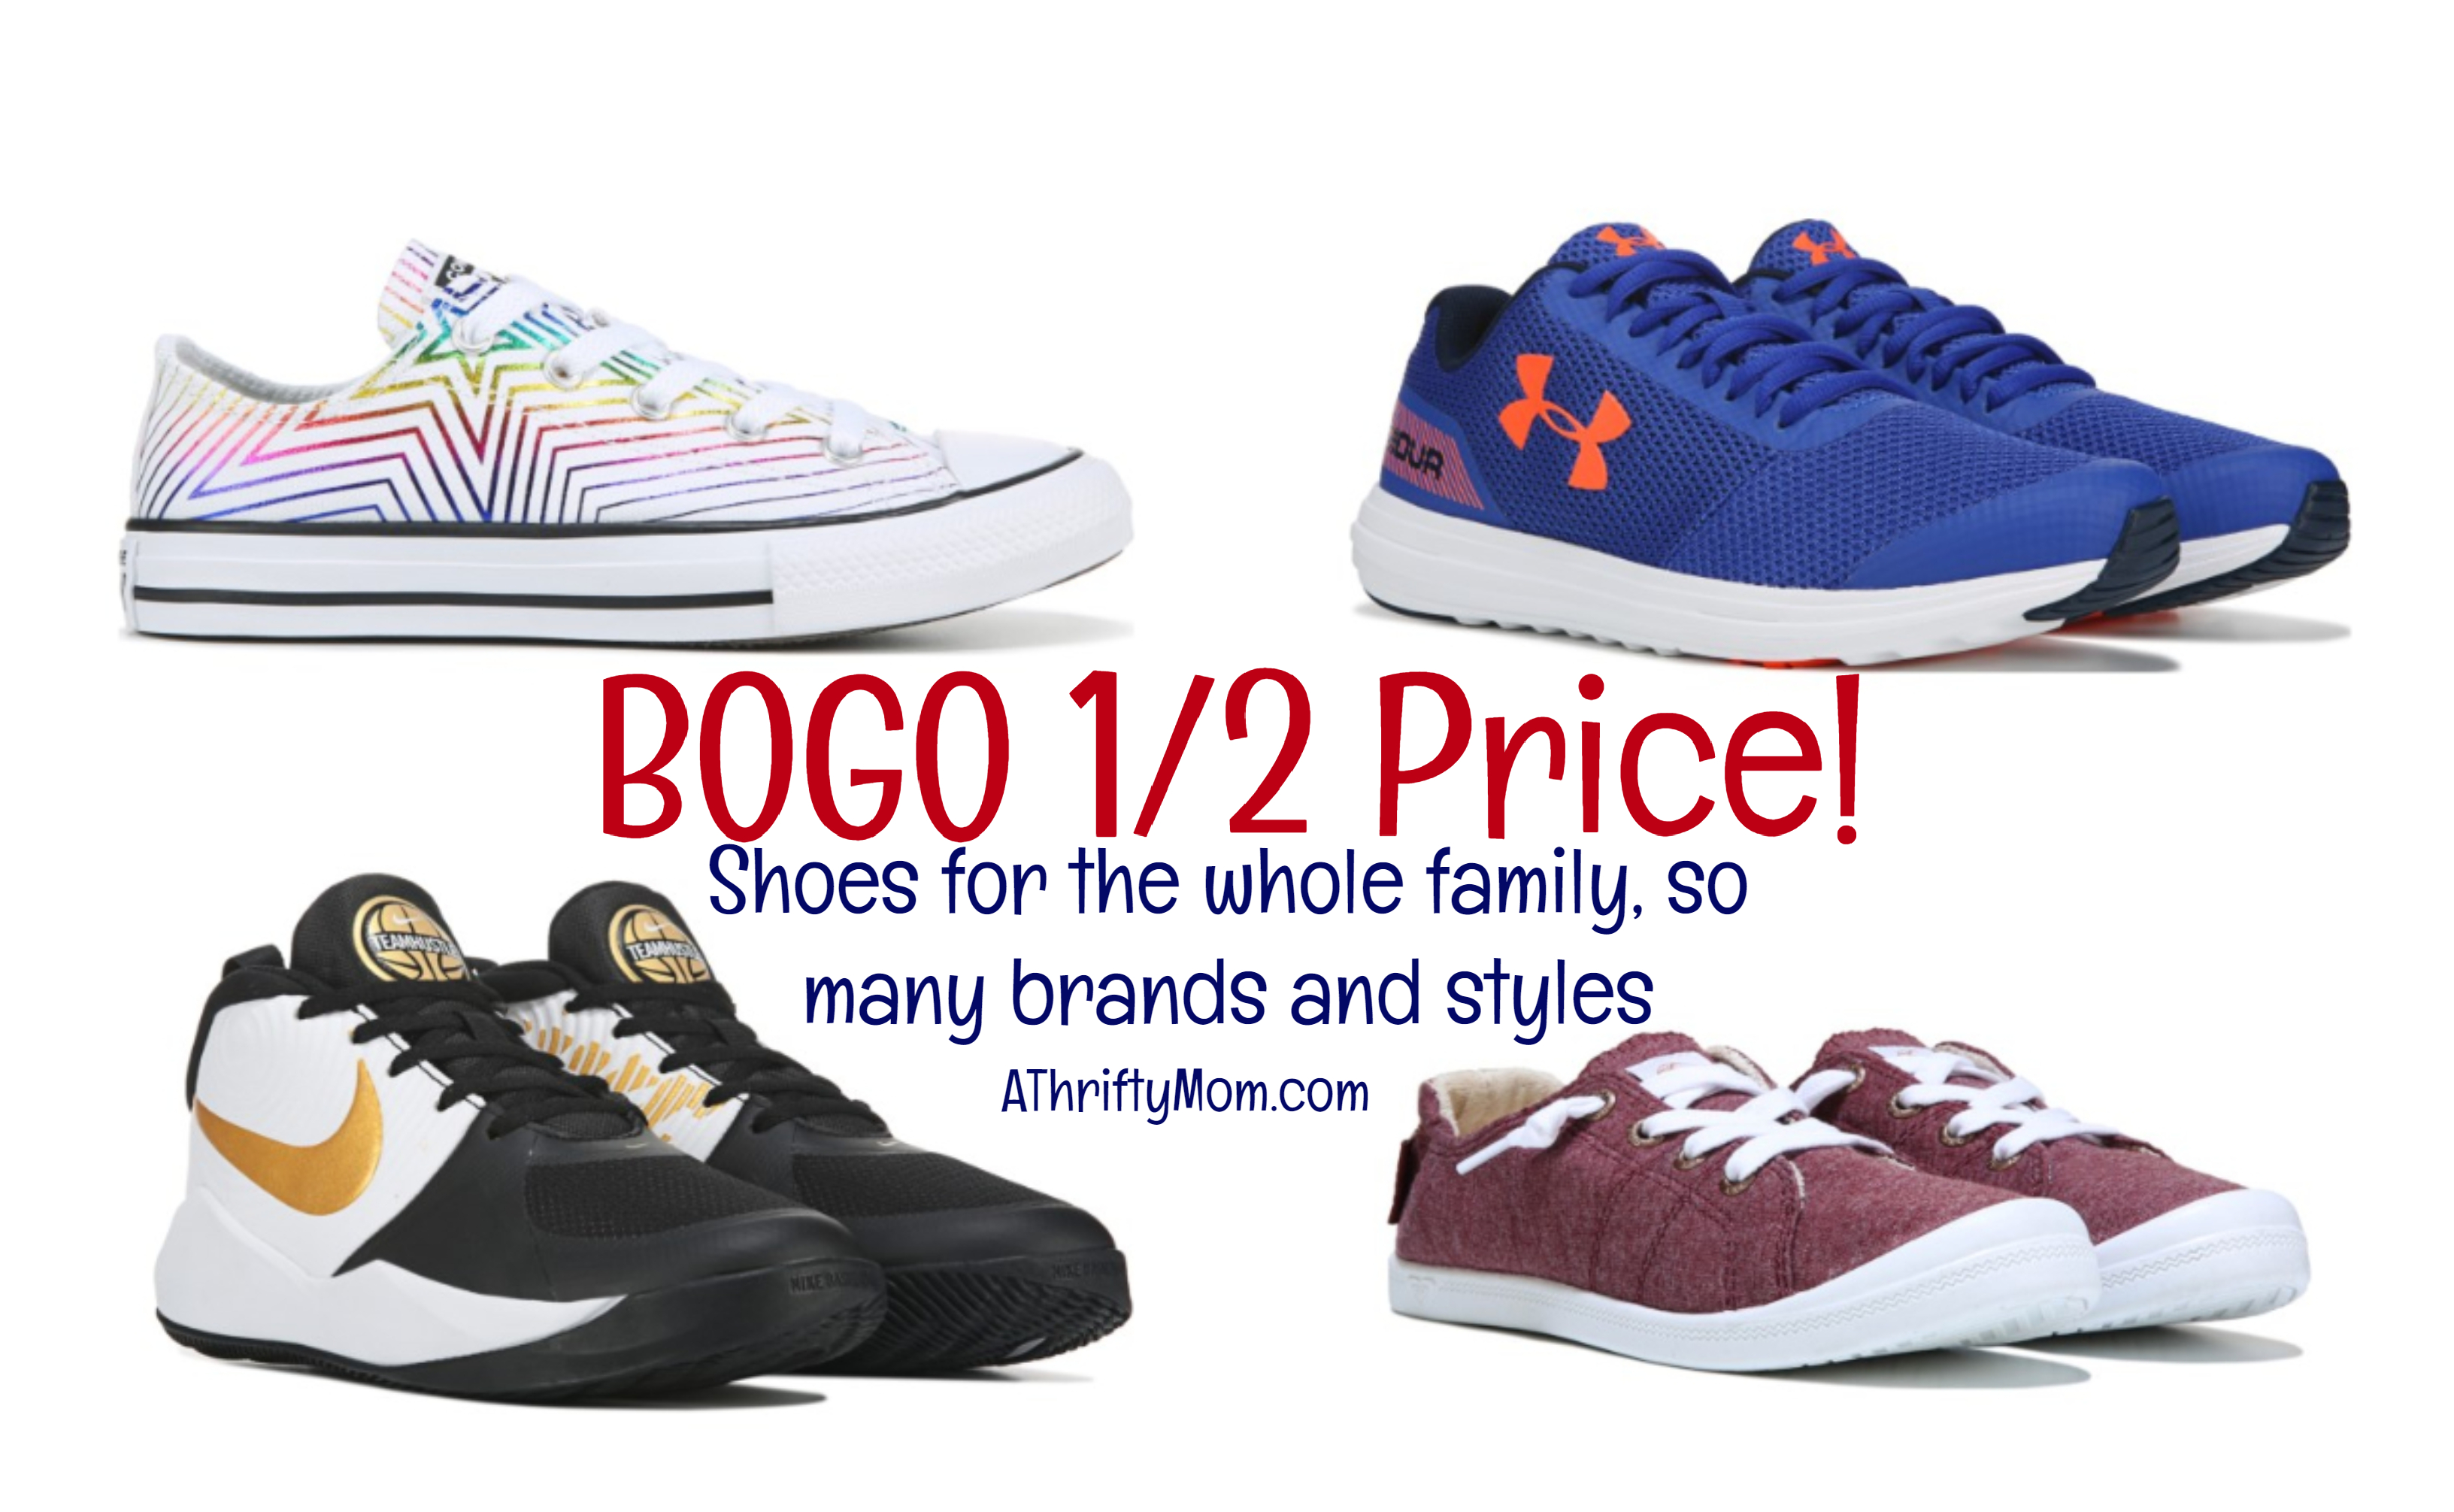 bogo deals on shoes